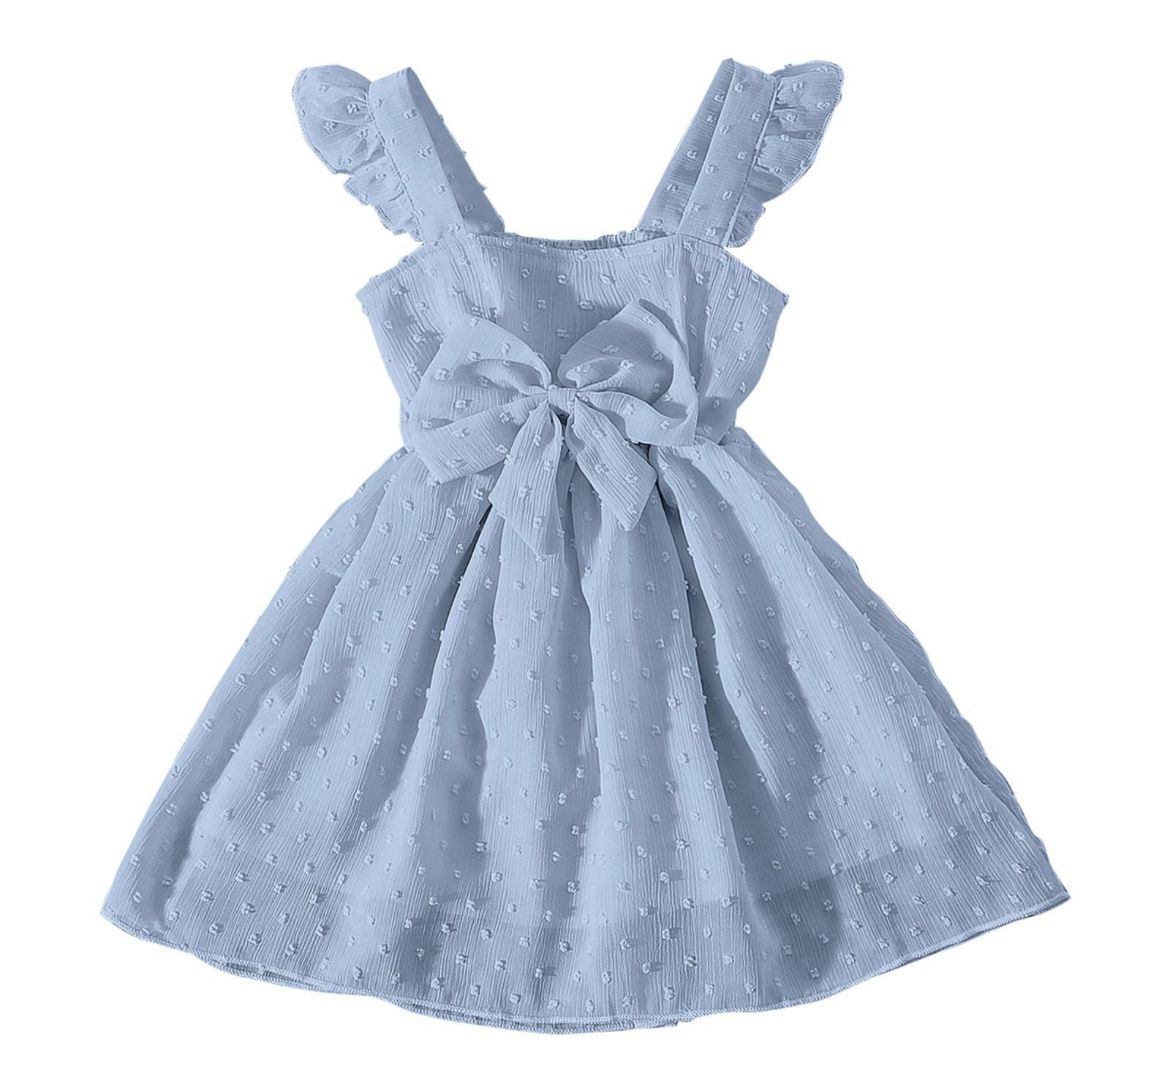 SHEIN Toddler Girl Summer Dress Sleeveless Sundress